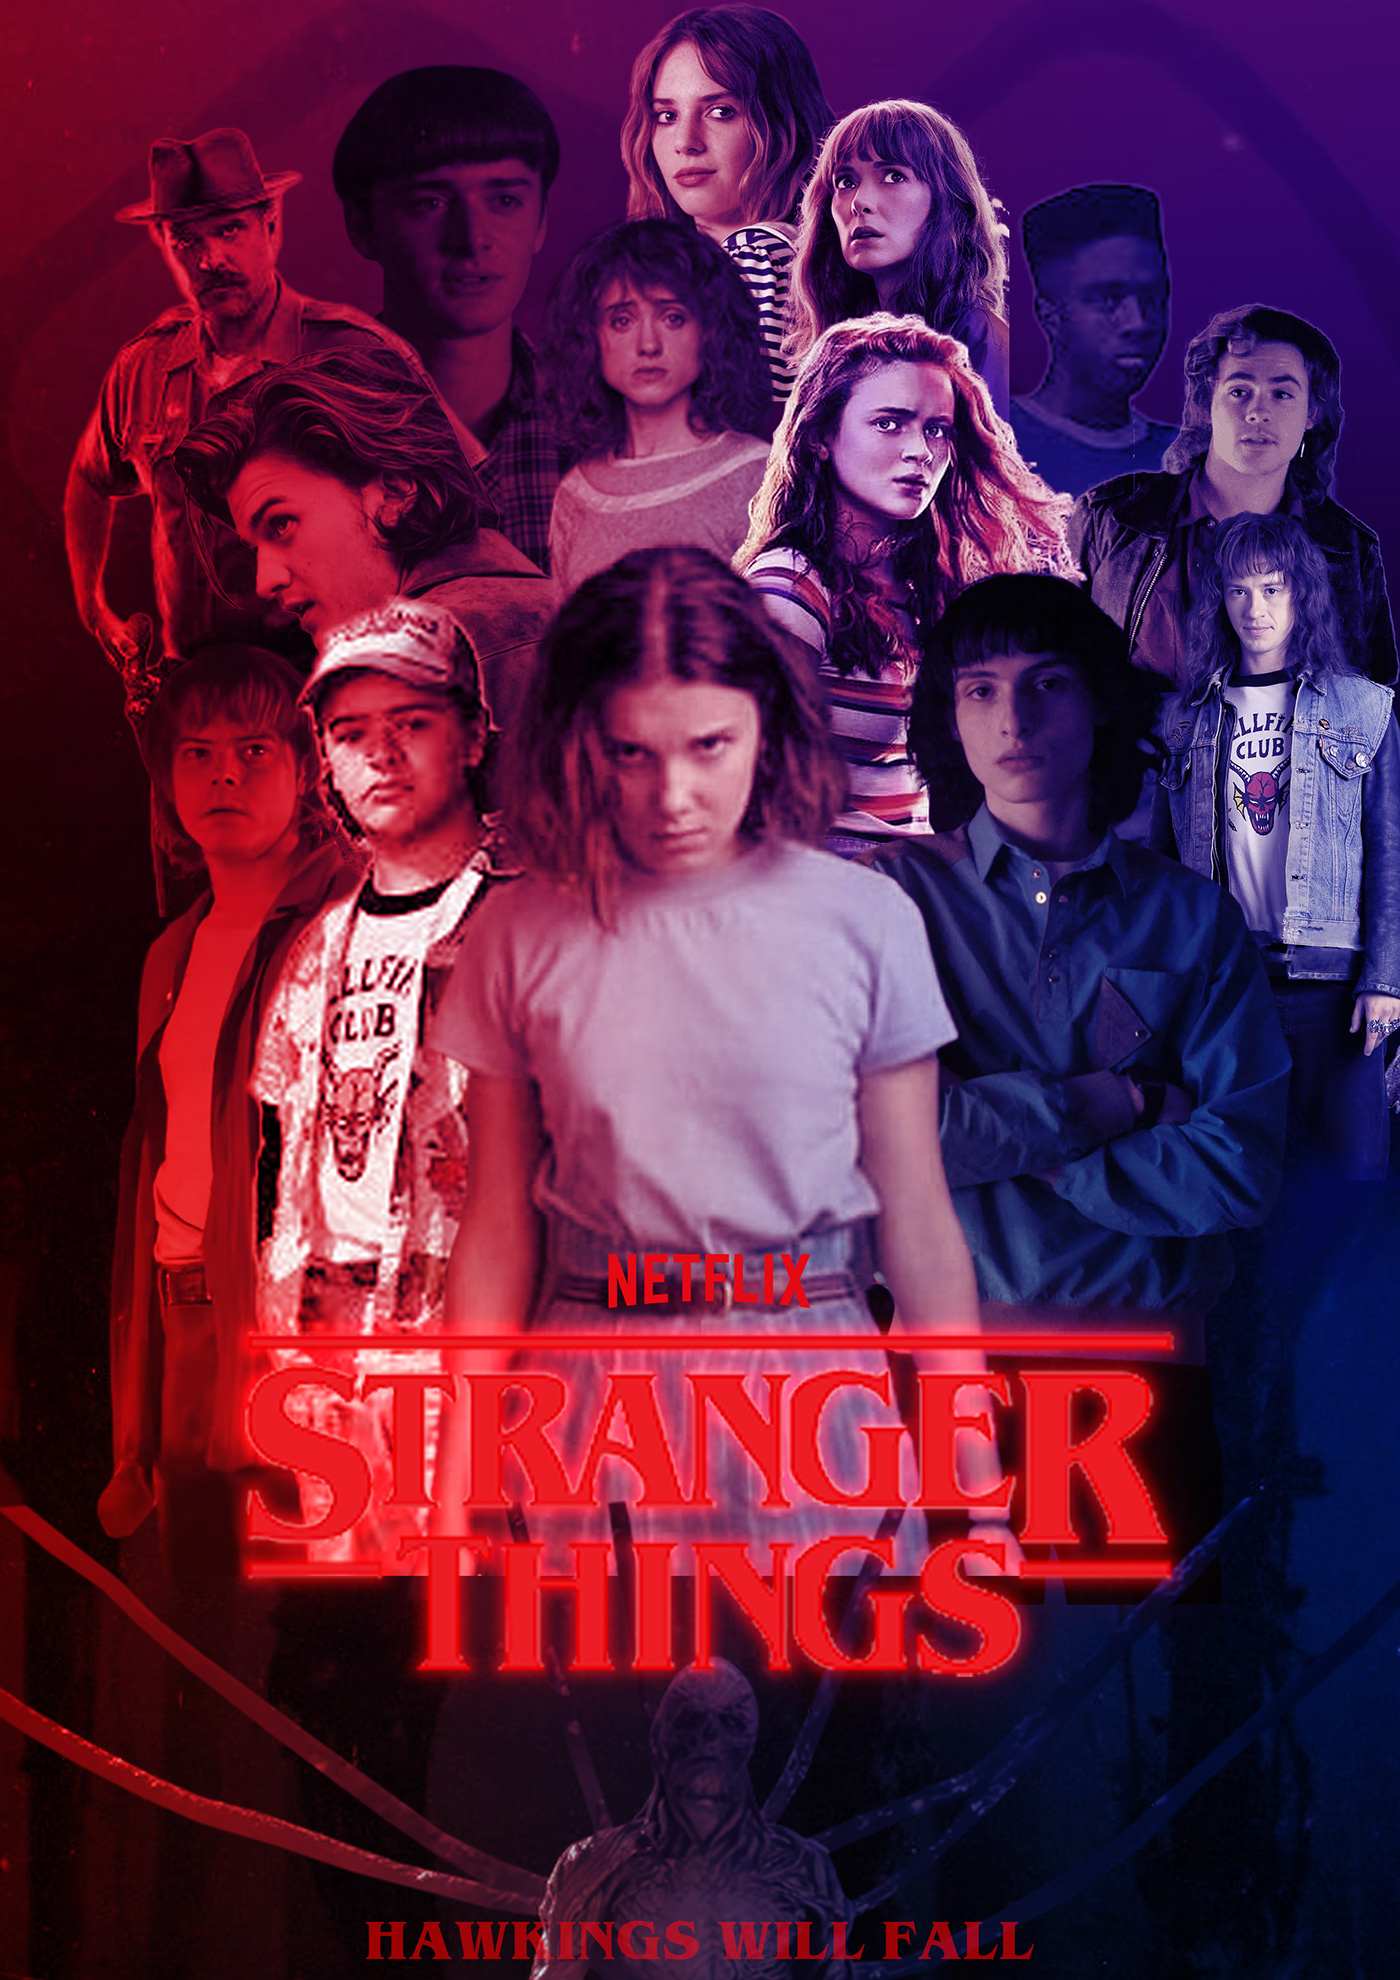 Netflix StrangerThings poster design posterdesign millybobbybrown